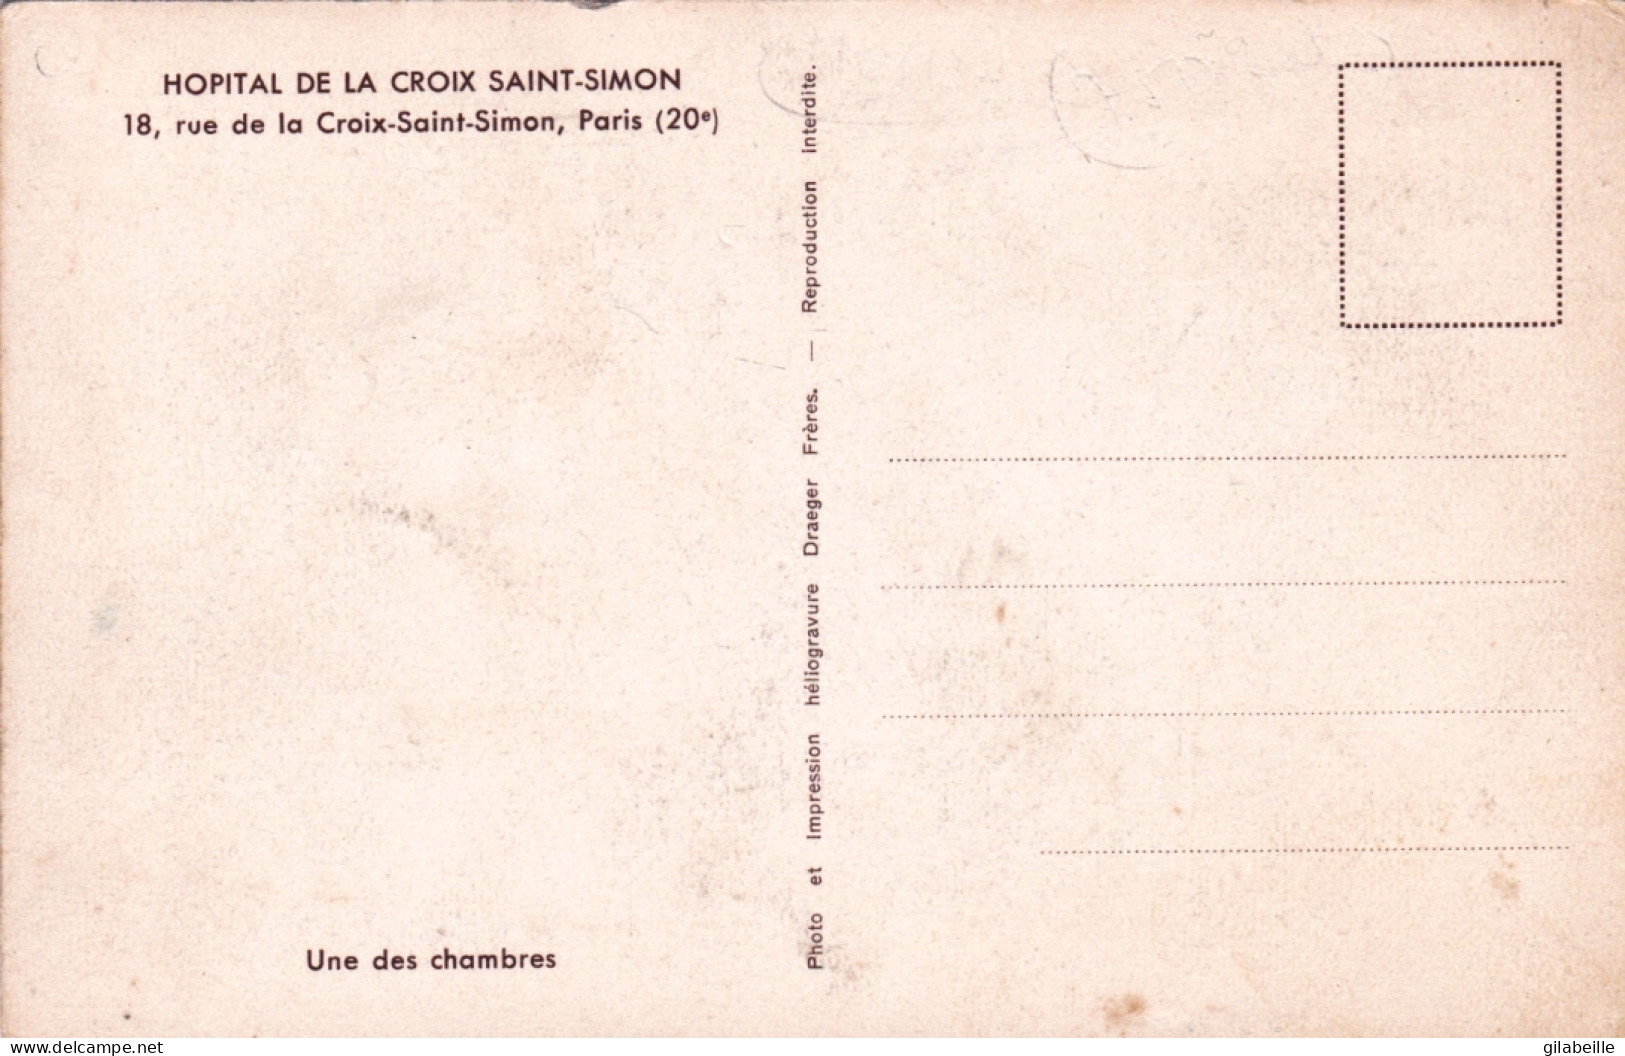 75 -  PARIS 20e 18, Rue De La Croix-Saint-Simon Hopital -  Une Des Chambres - Paris (20)